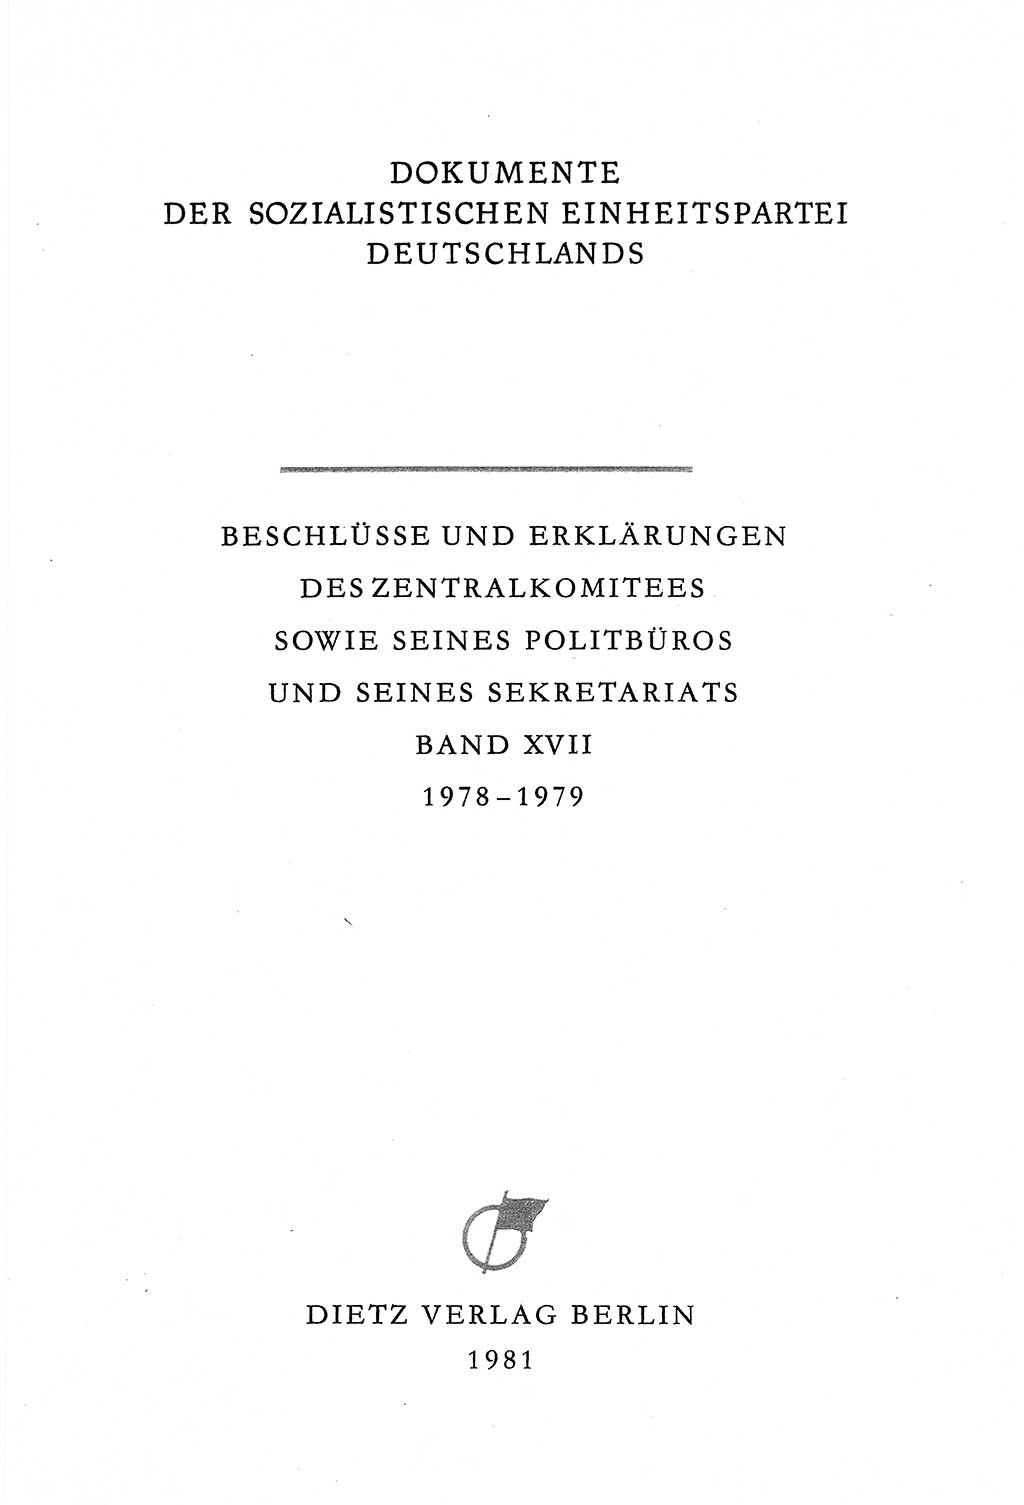 Dokumente der Sozialistischen Einheitspartei Deutschlands (SED) [Deutsche Demokratische Republik (DDR)] 1978-1979, Seite 3 (Dok. SED DDR 1978-1979, S. 3)